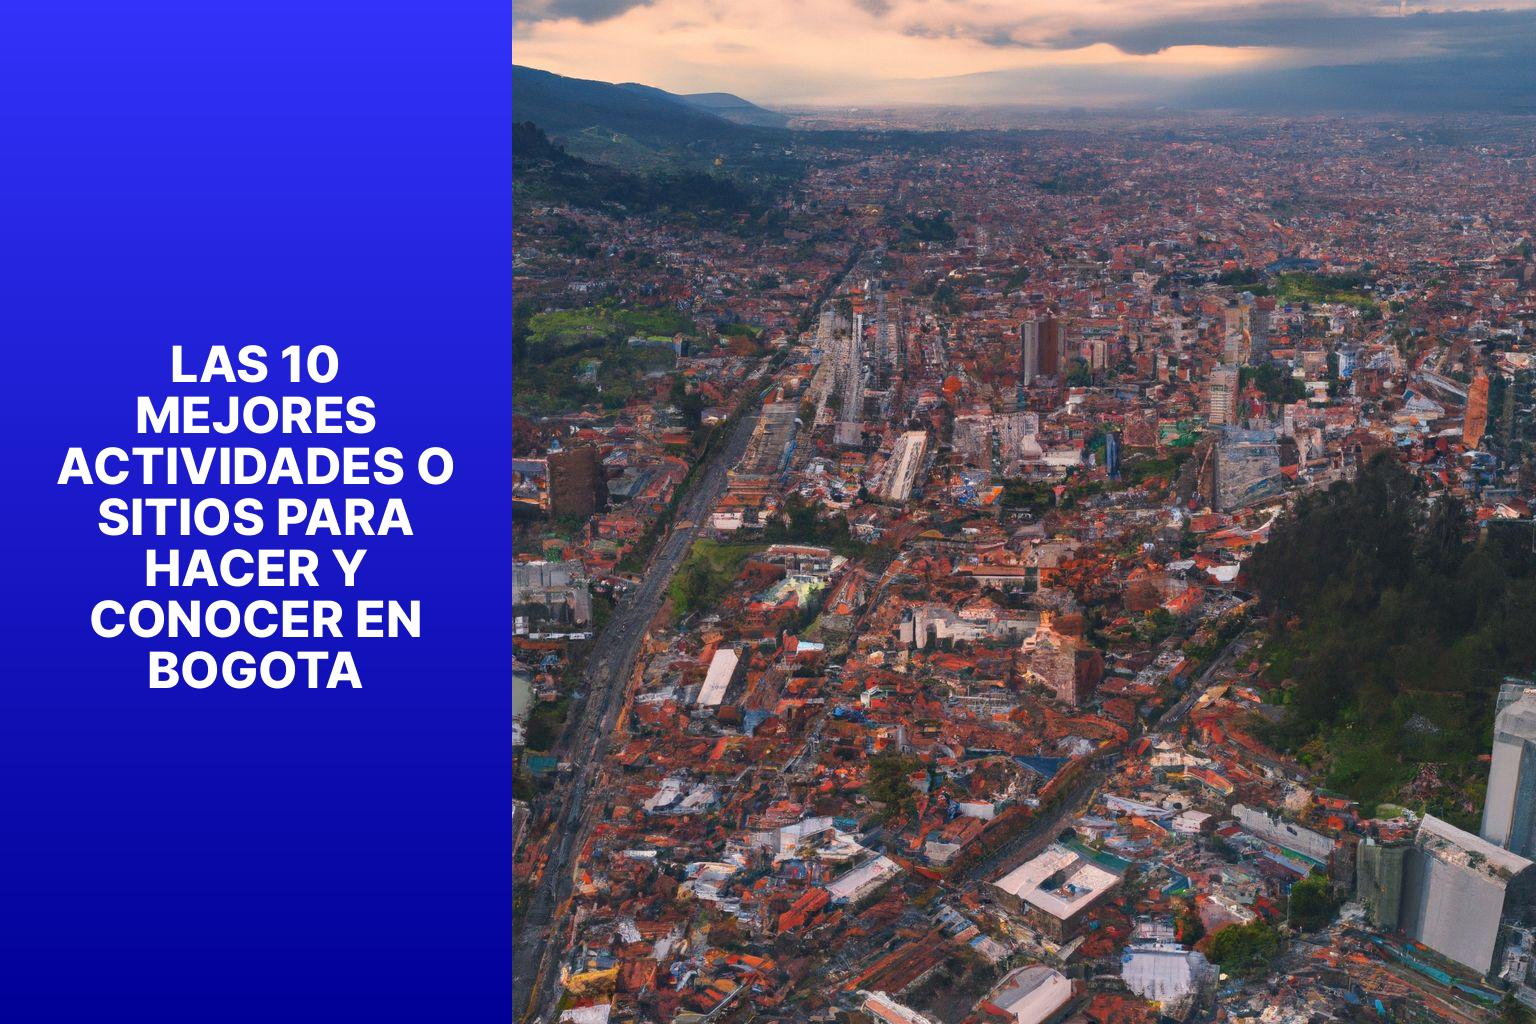 Las 10 mejores actividades o sitios para hacer y conocer en Bogota